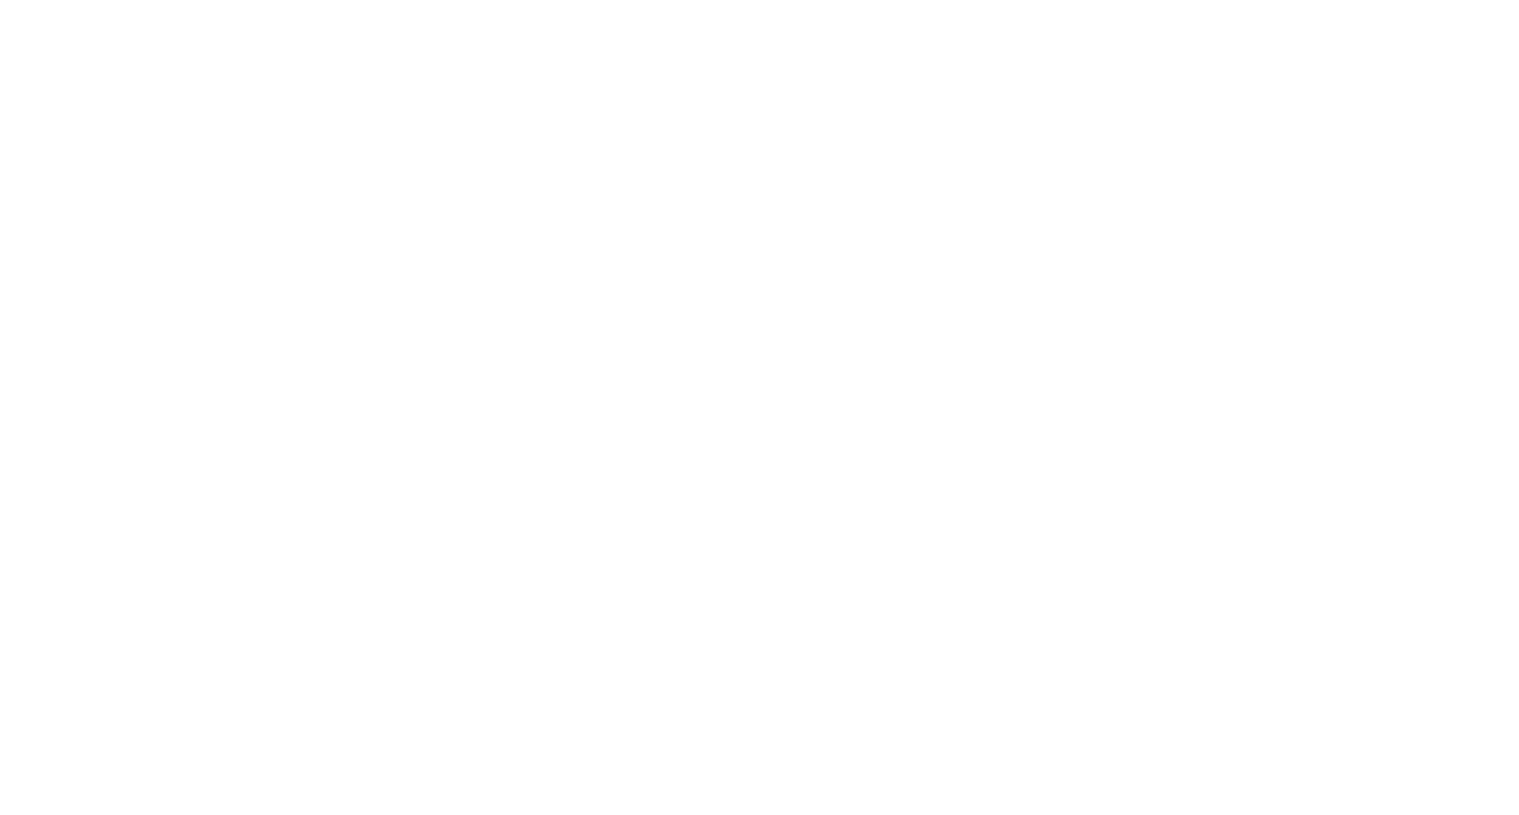 Кейс сервиса BRANDNATION - Брендбук магазина спортивной одежды. Брендинговое агентство BRANDNATION в Москве и Санкт-Петербурге. Услуги: разработка логотипа и фирменного стиля, дизайн упаковки, брендбук, ребрендинг, разработка сайта.